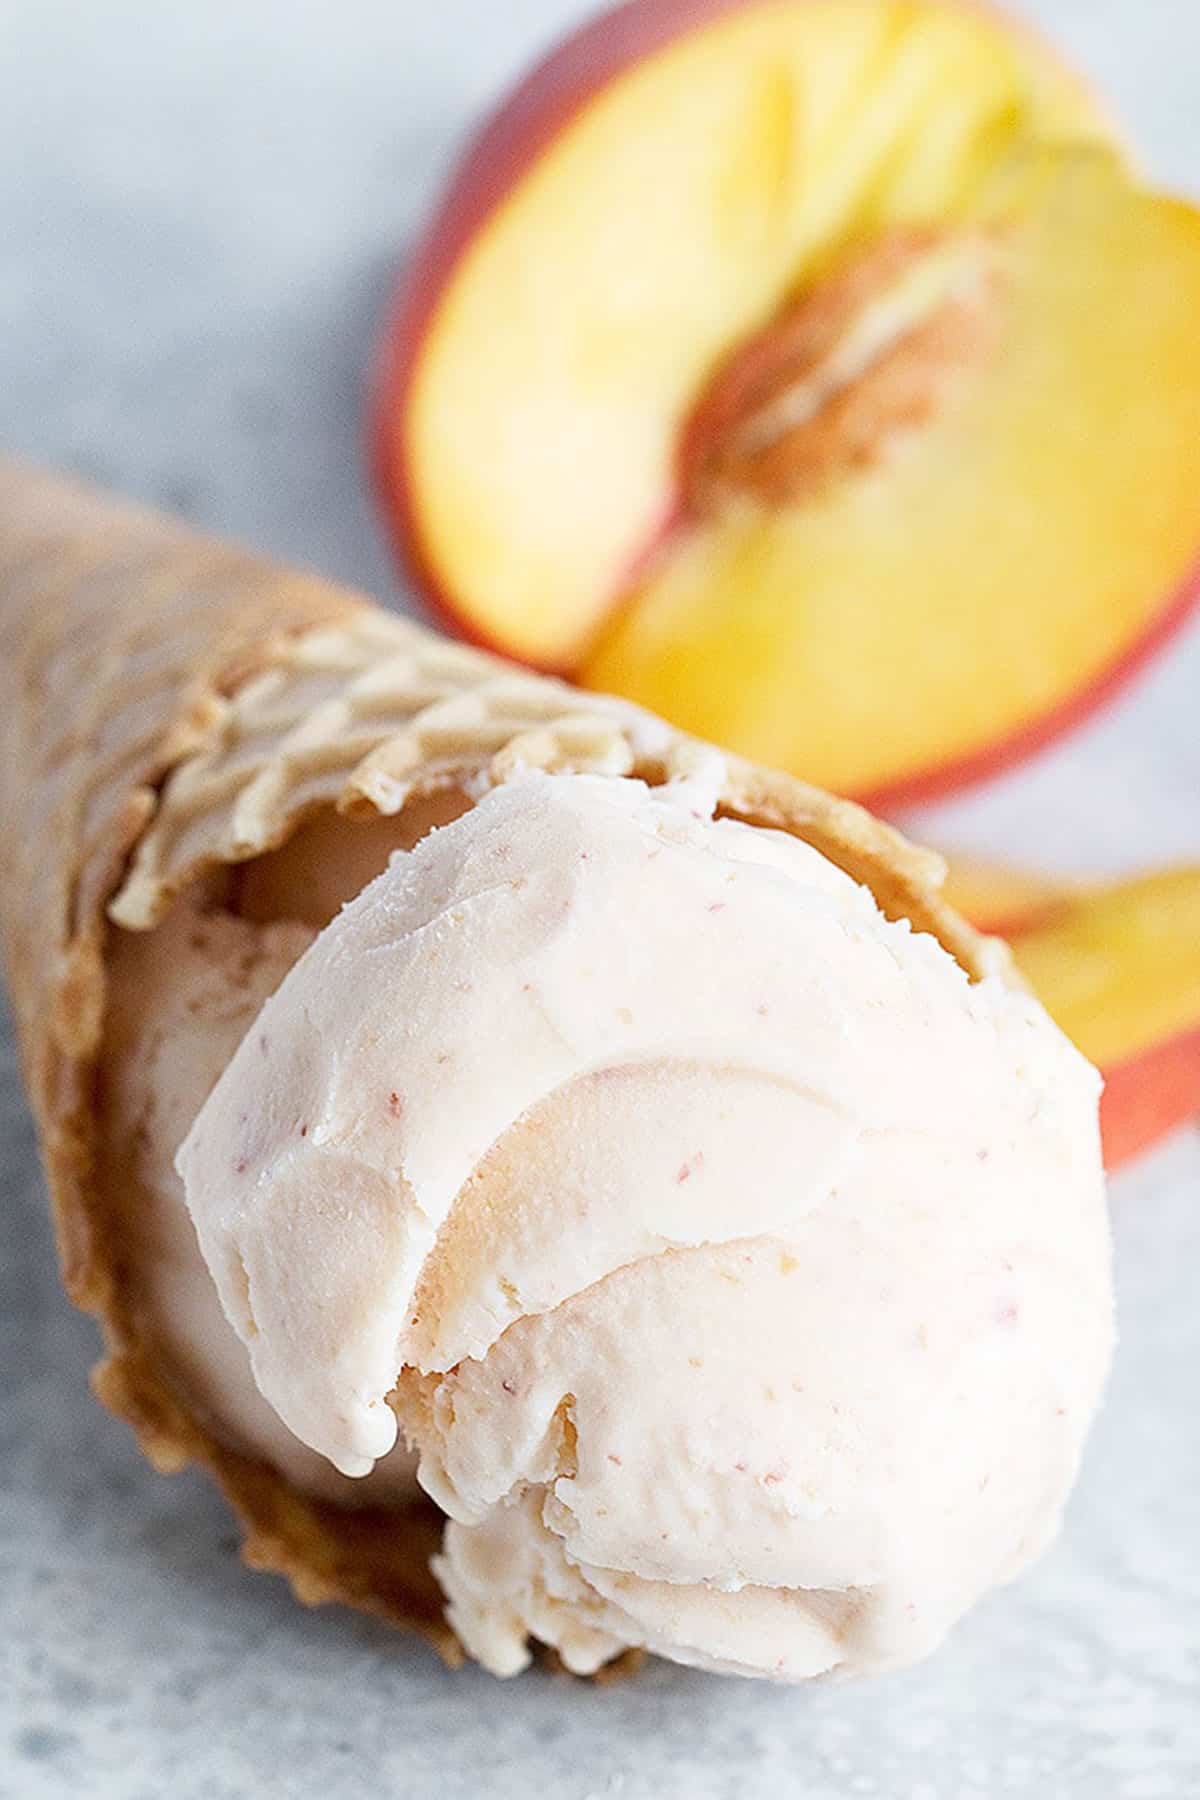 peach ice cream in cone